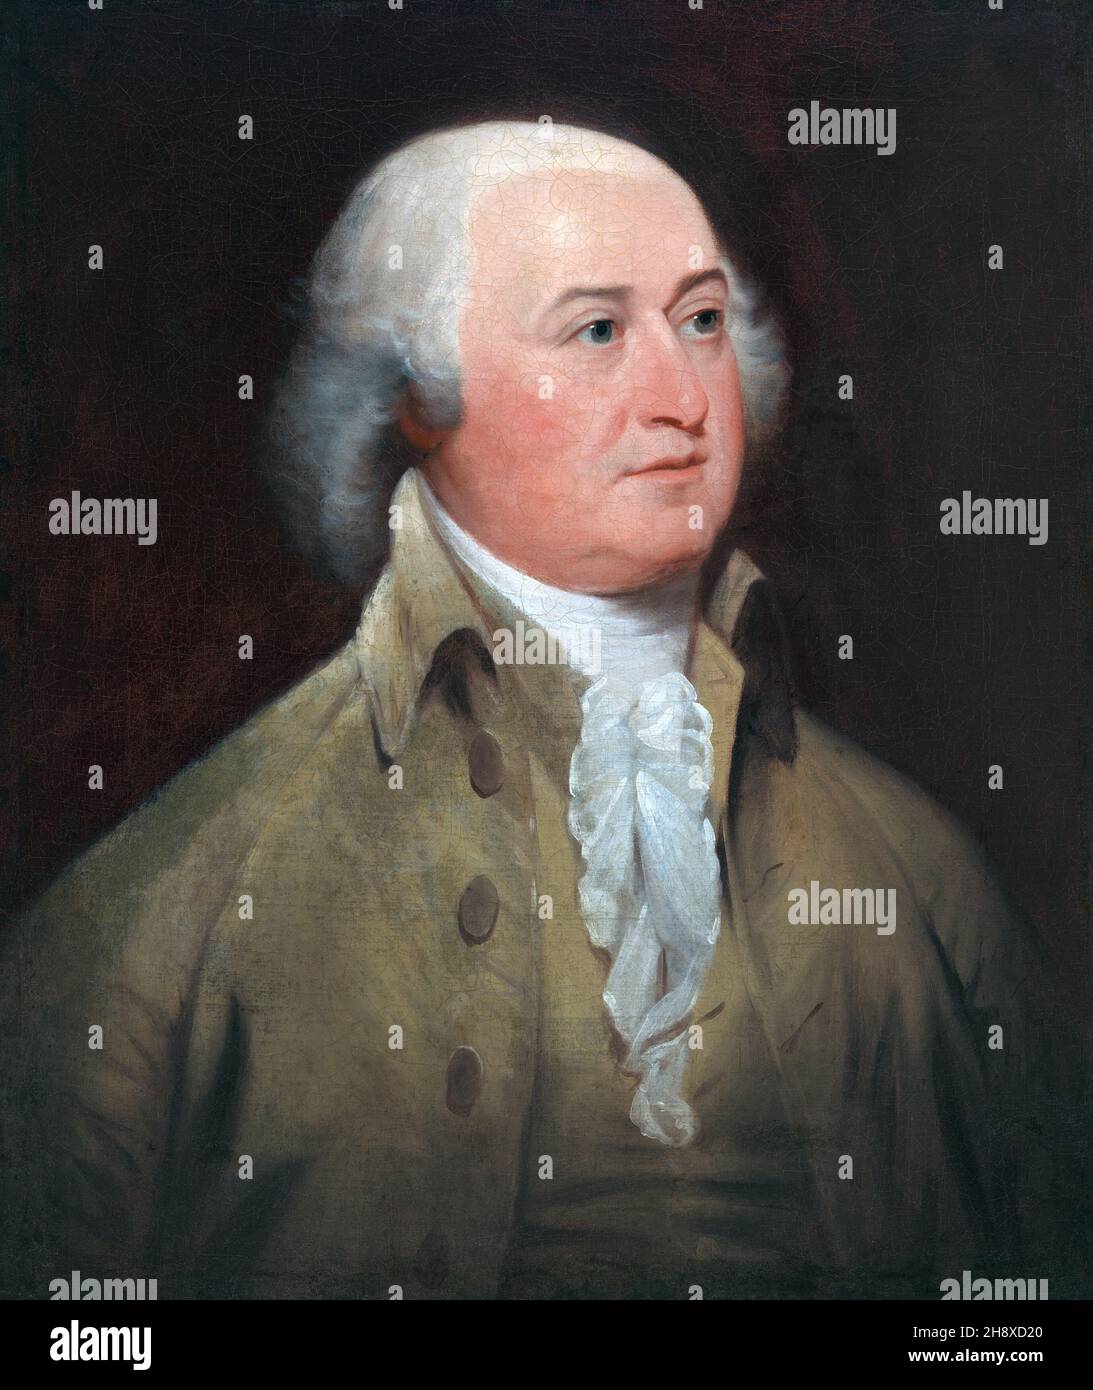 John Adams (1735-1826), 1st Vizepräsident und 2nd Präsident der Vereinigten Staaten, amerikanischer Gründungsvater, Öl auf Leinwand Gemälde von John Trumbull aus einem Original-Gemälde von Gilbert Stuart, 1793 Stockfoto